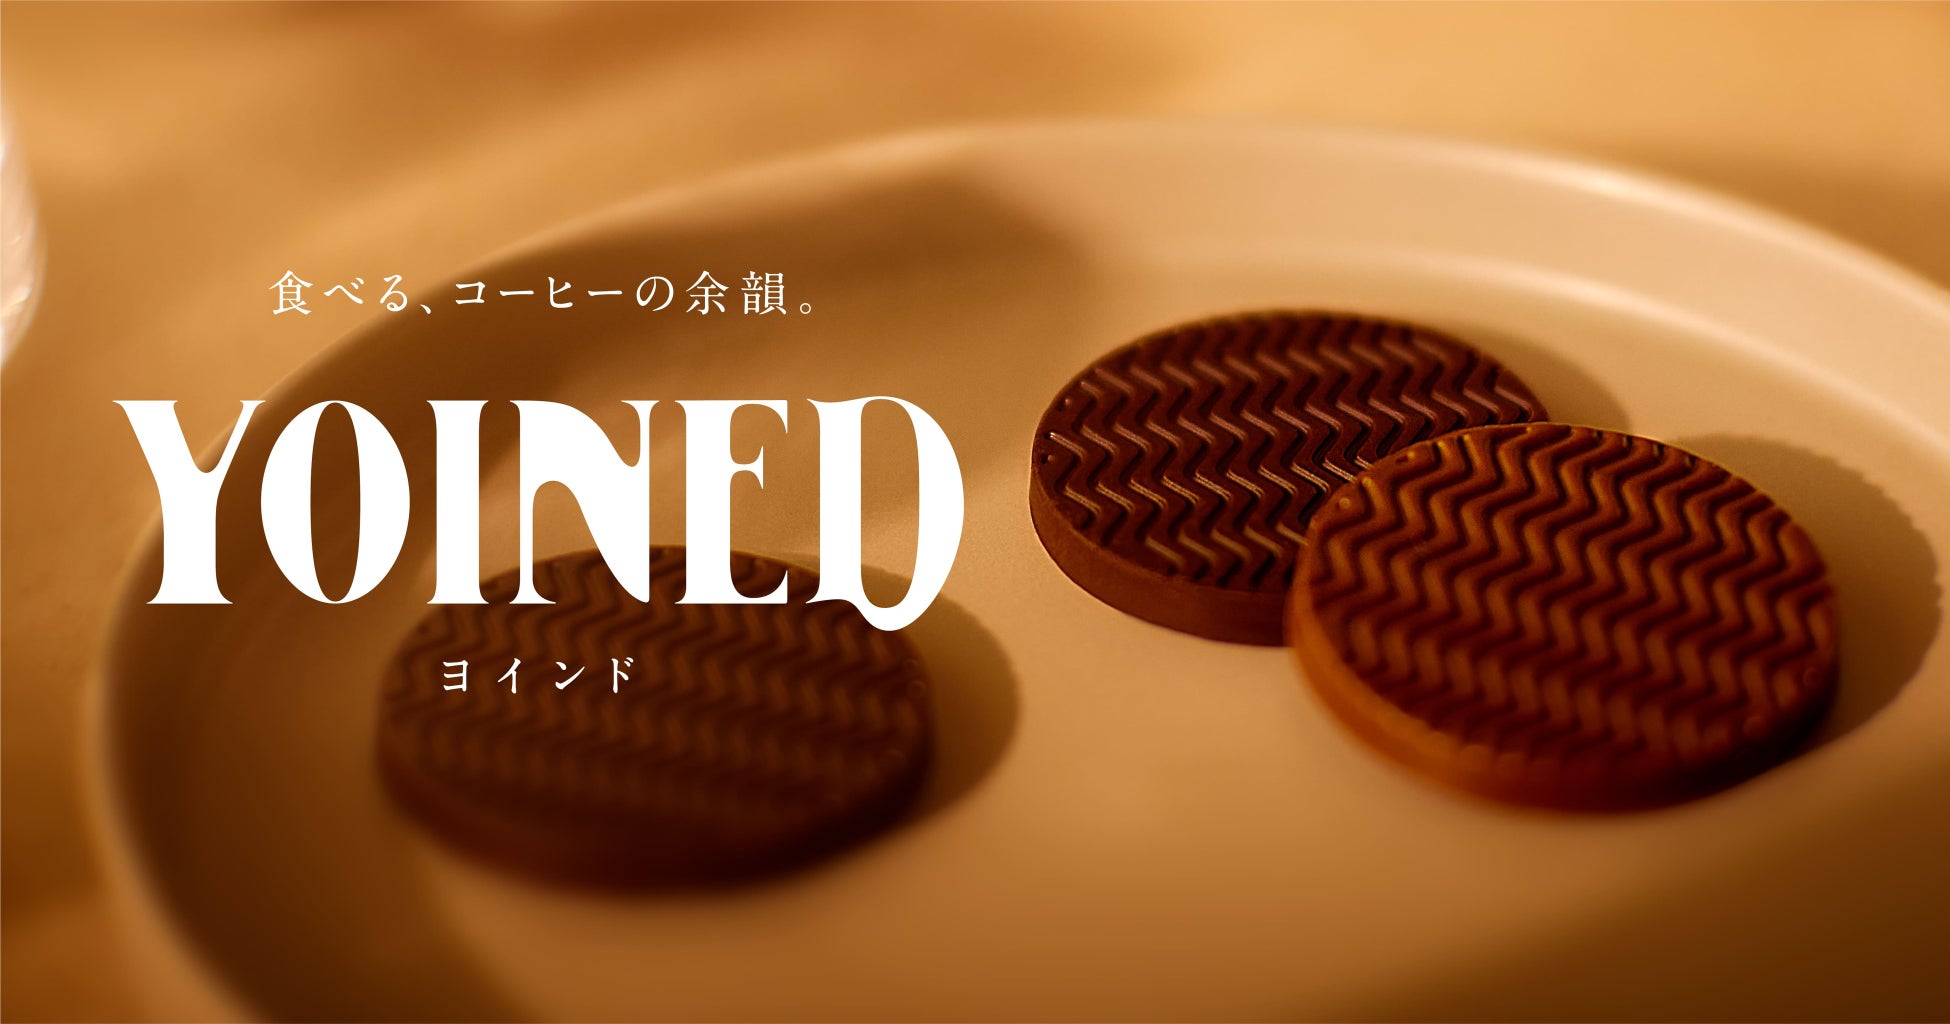 UCCの飲まないコーヒー『YOINED ヨインド』製造終了及び販売見通しのお知らせ